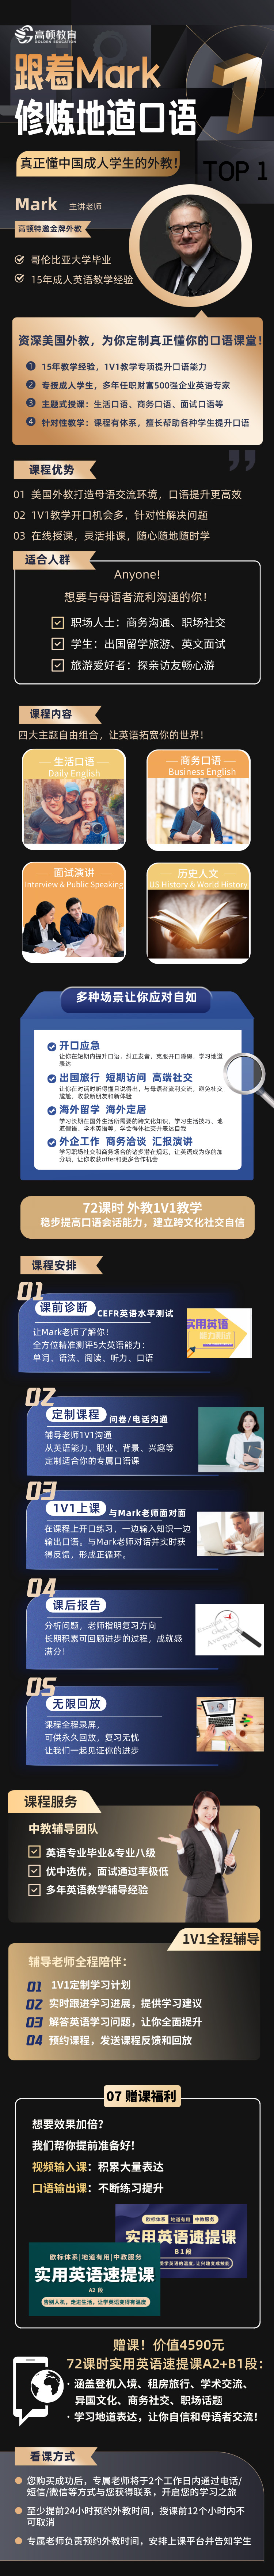 https://simg01.gaodunwangxiao.com/uploadfiles/product-center/202209/20/71a7d_20220920101029.jpg